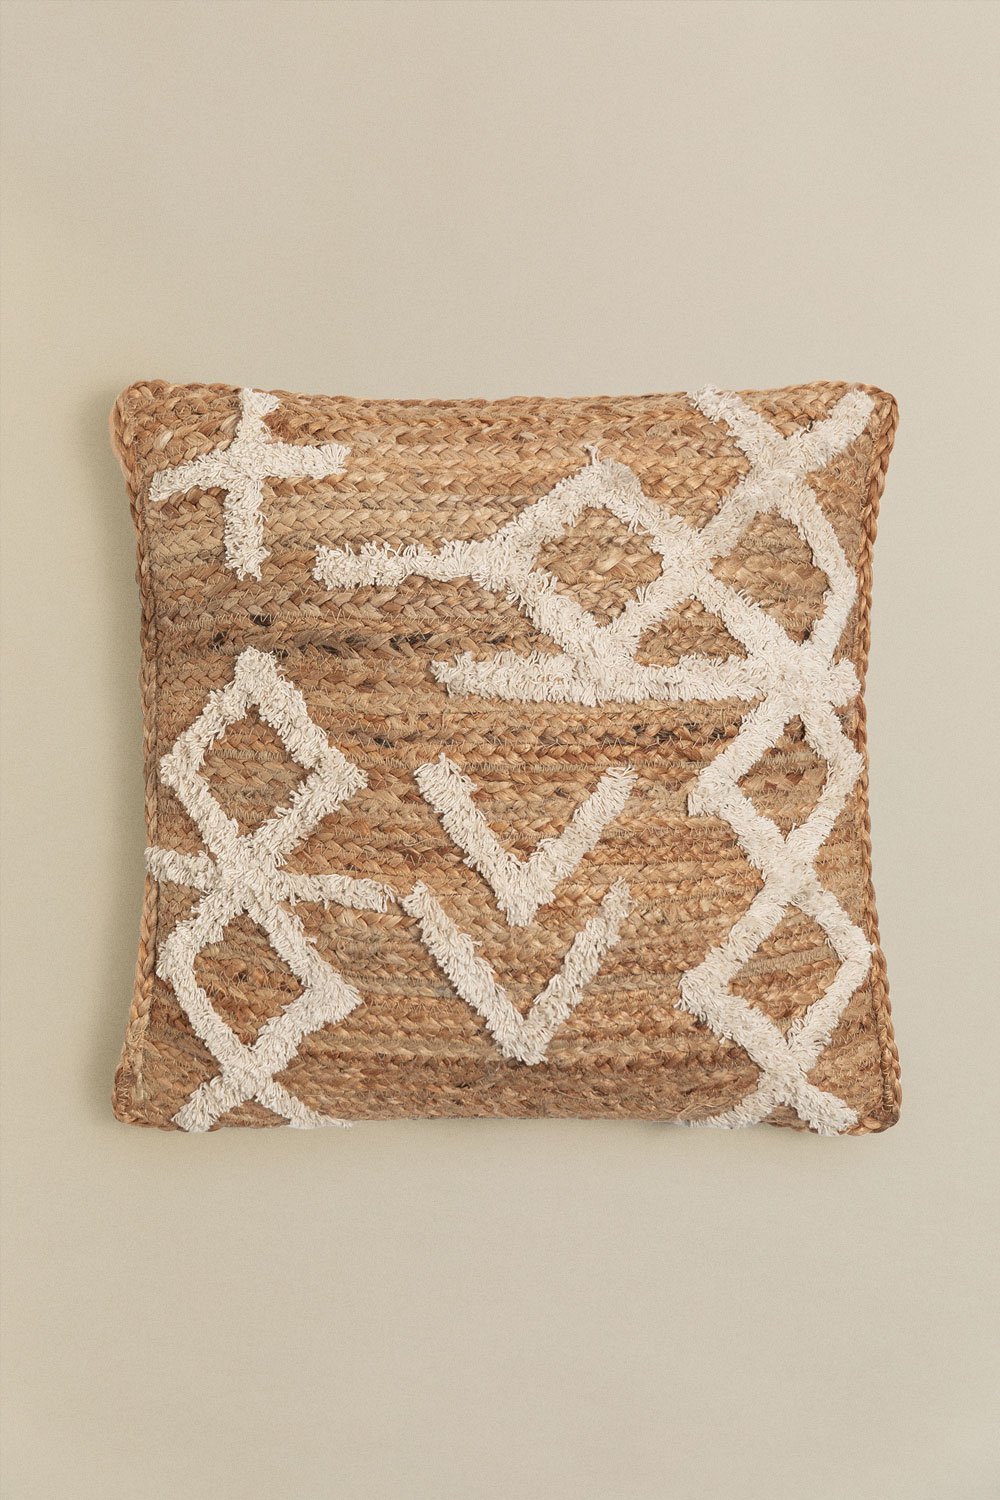 Quadratisches Kissen aus Jute und Baumwolle (45x45 cm) Bato, Galeriebild 1